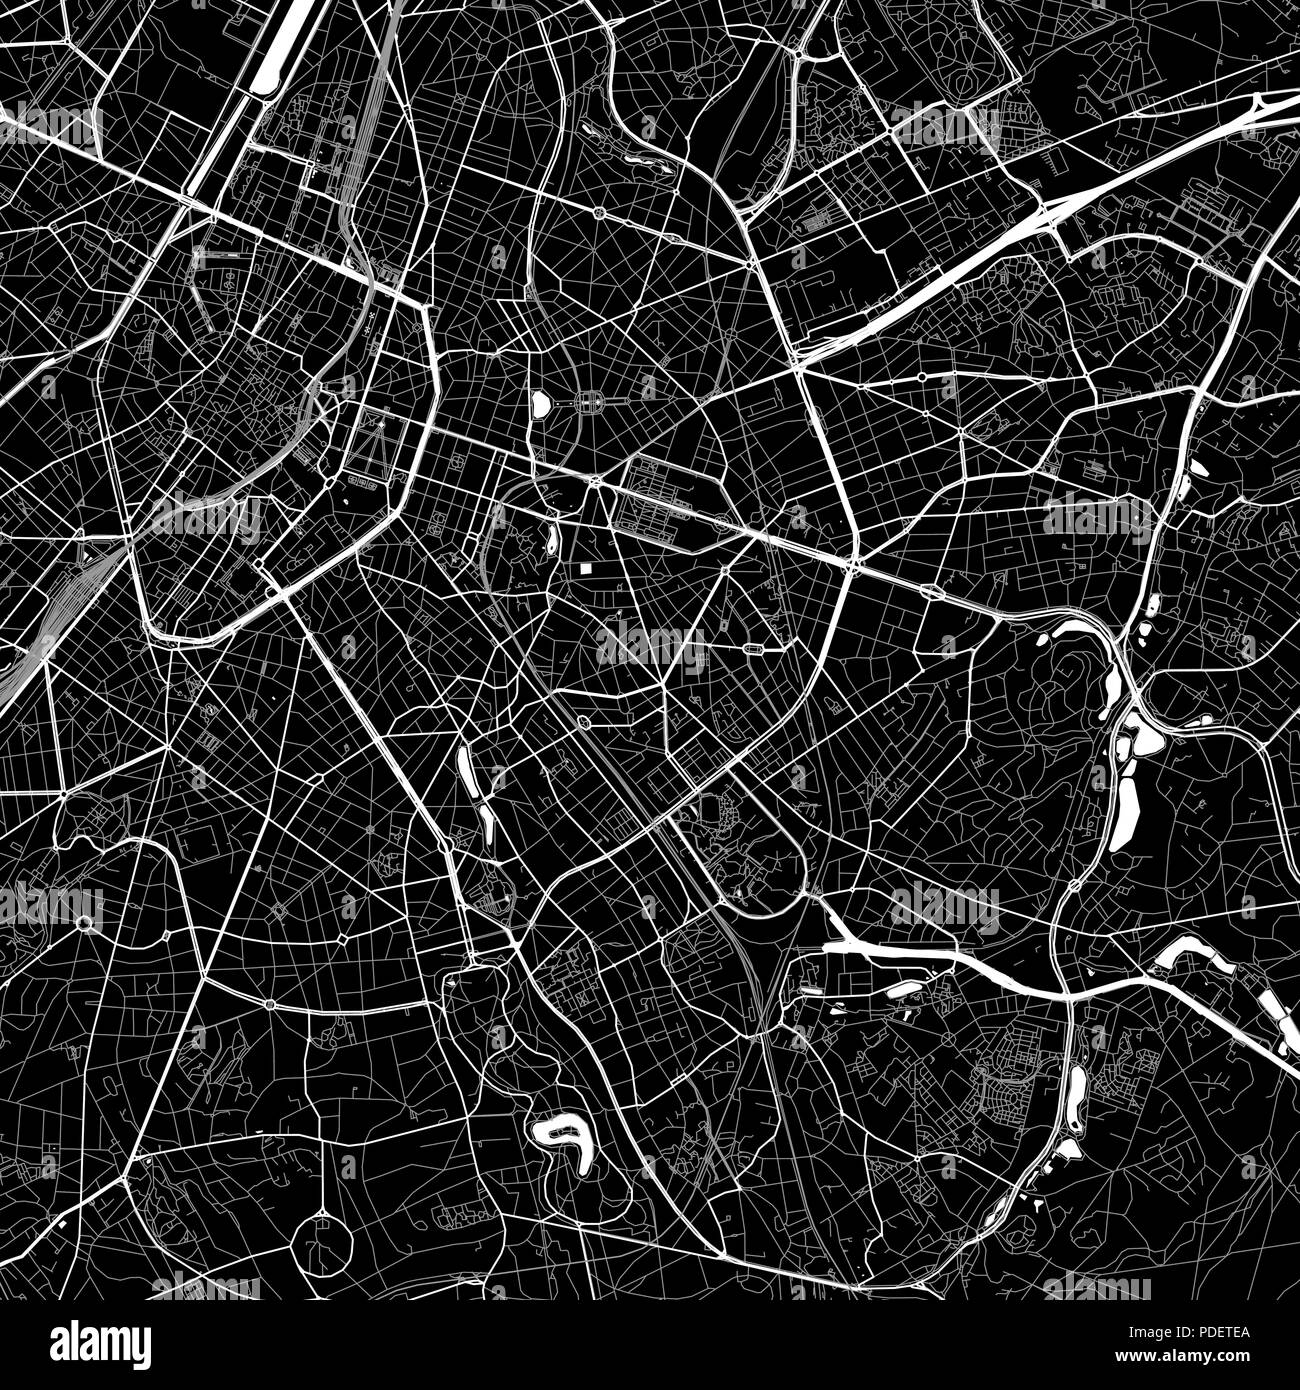 Lageplan von Etterbeek, Belgien. Der dunkle Hintergrund Version für Infografik und Marketing. Diese Karte von Etterbeek, Region Brüssel-Hauptstadt, enthält stre Stock Vektor